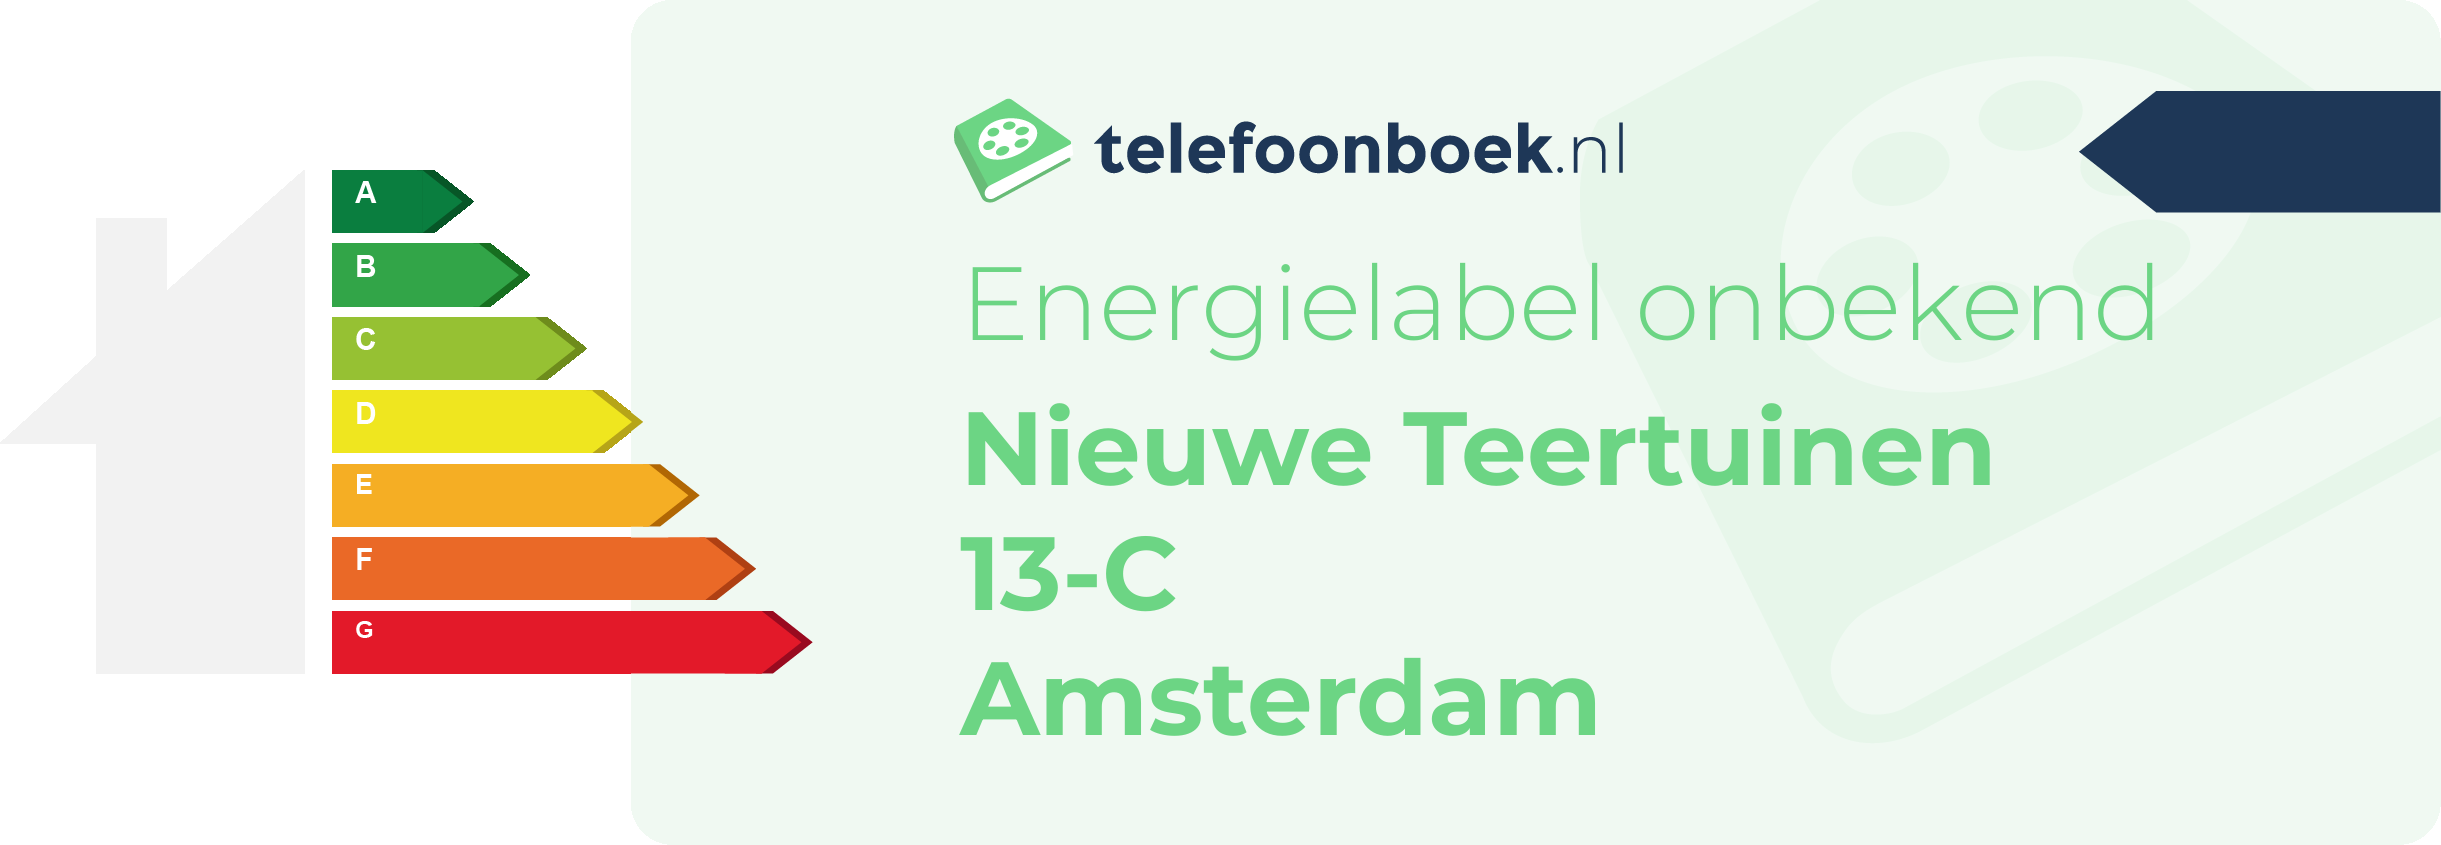 Energielabel Nieuwe Teertuinen 13-C Amsterdam